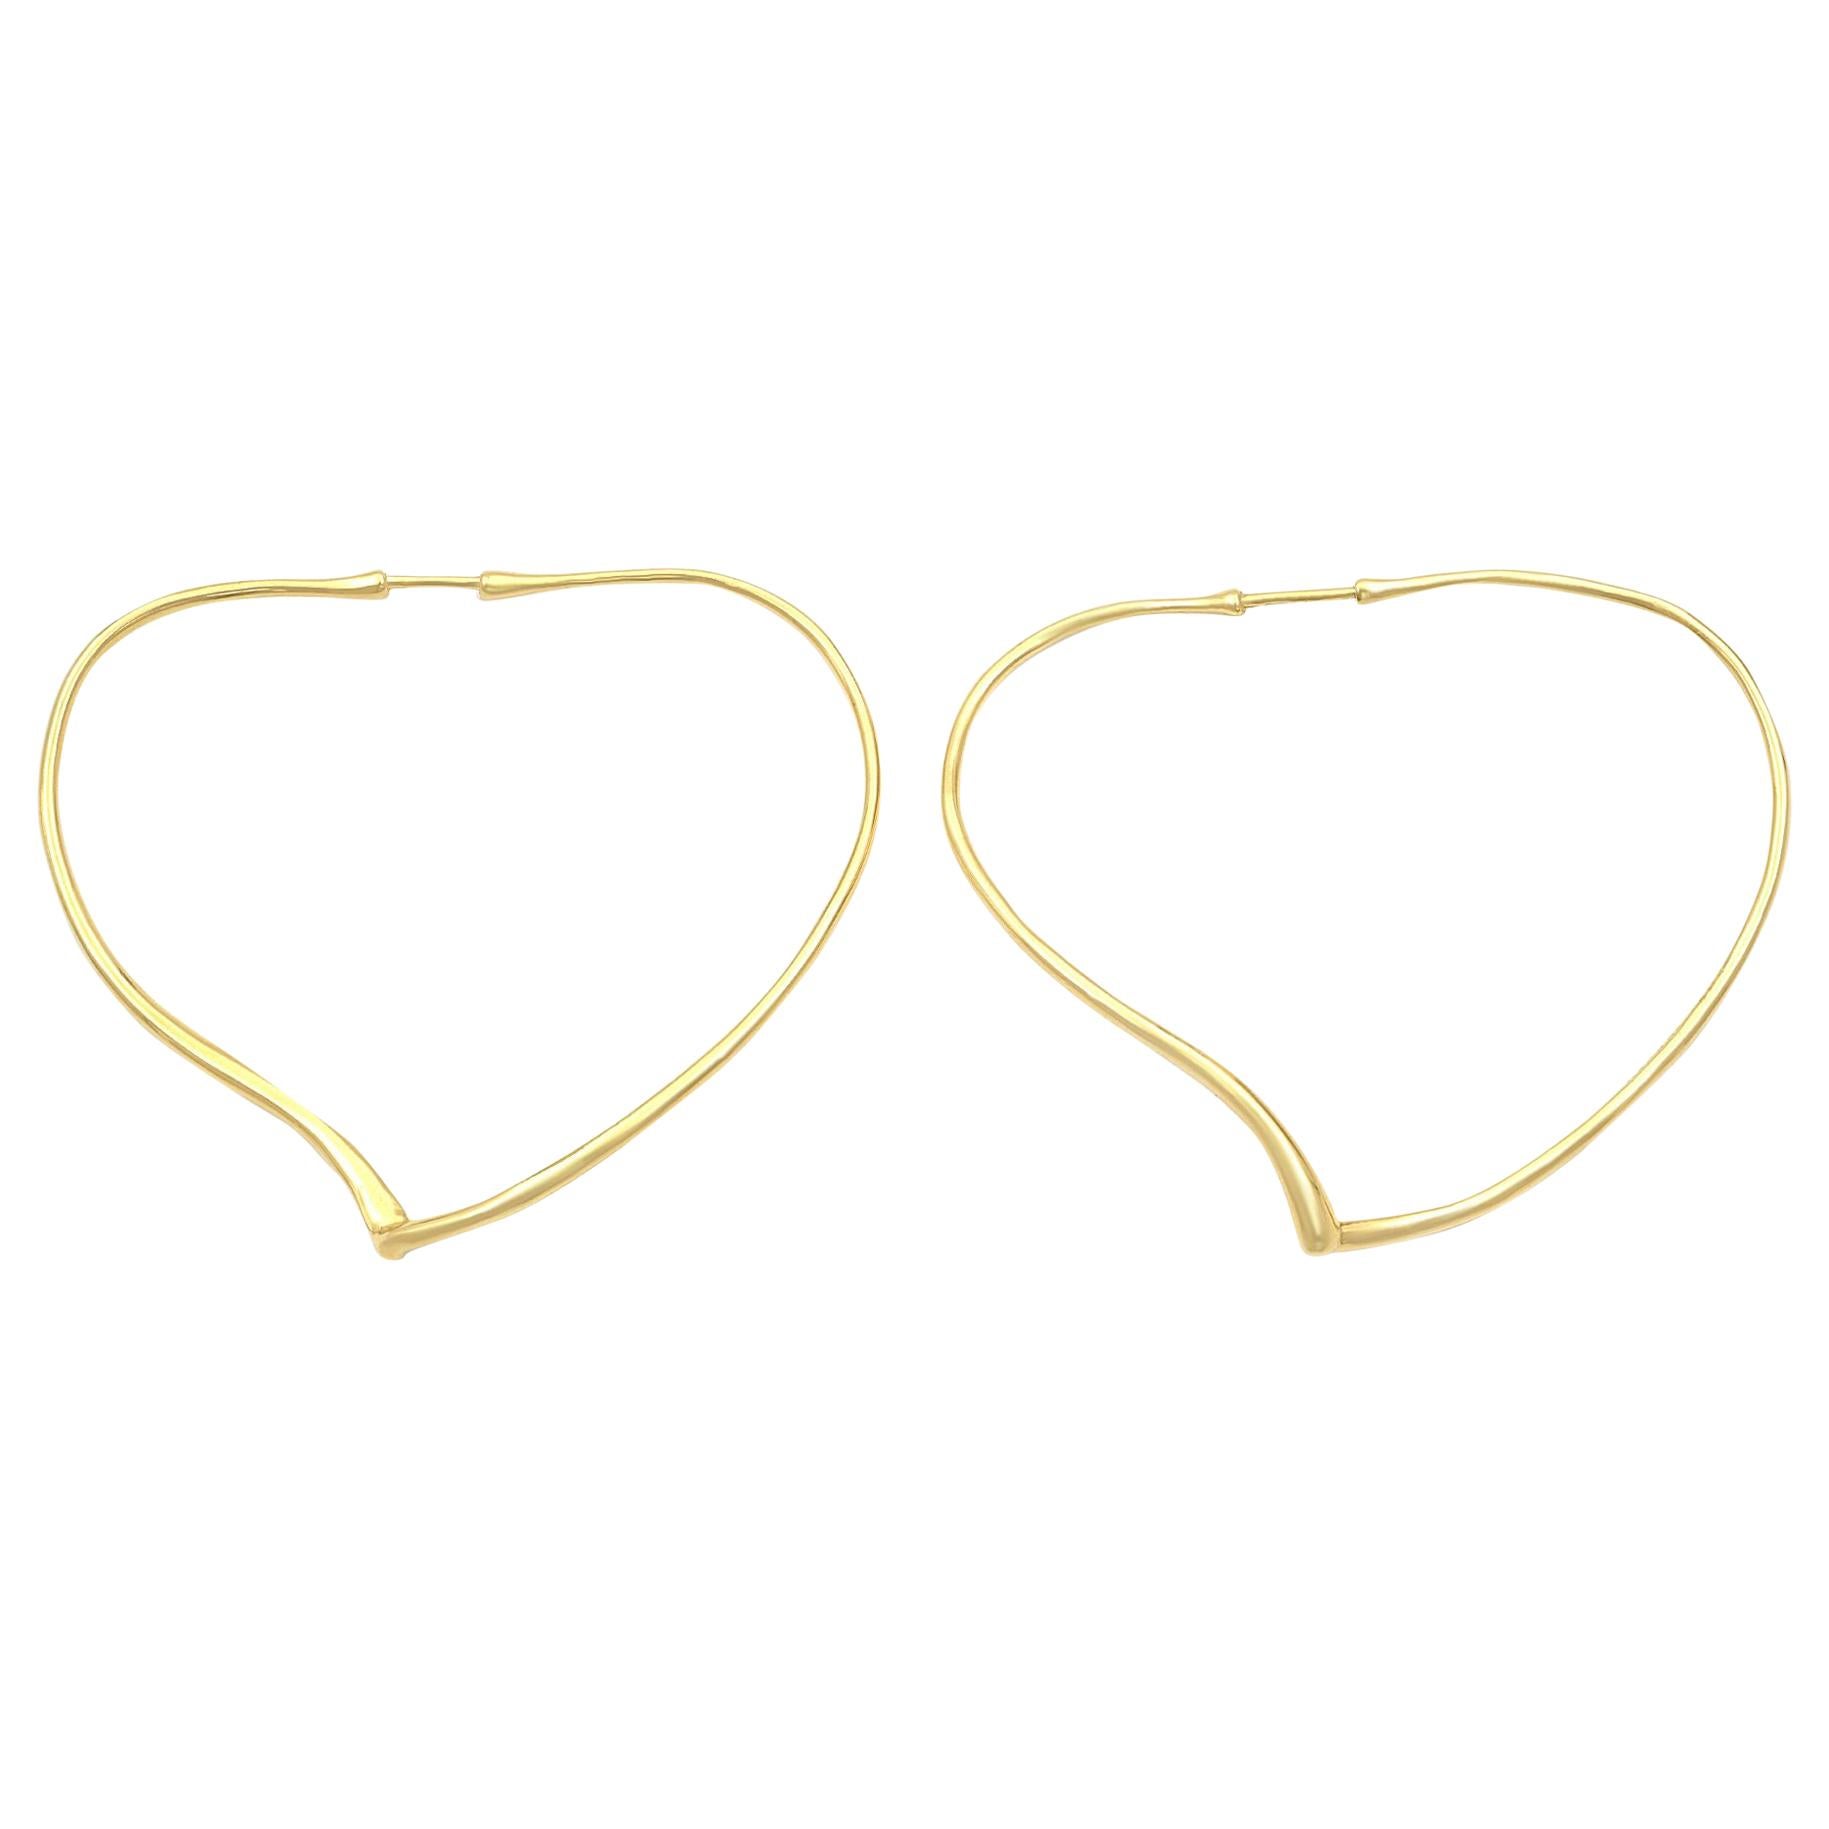 Tiffany & Co. Elsa Peretti Yellow Gold Open Heart Large Hoop Earrings